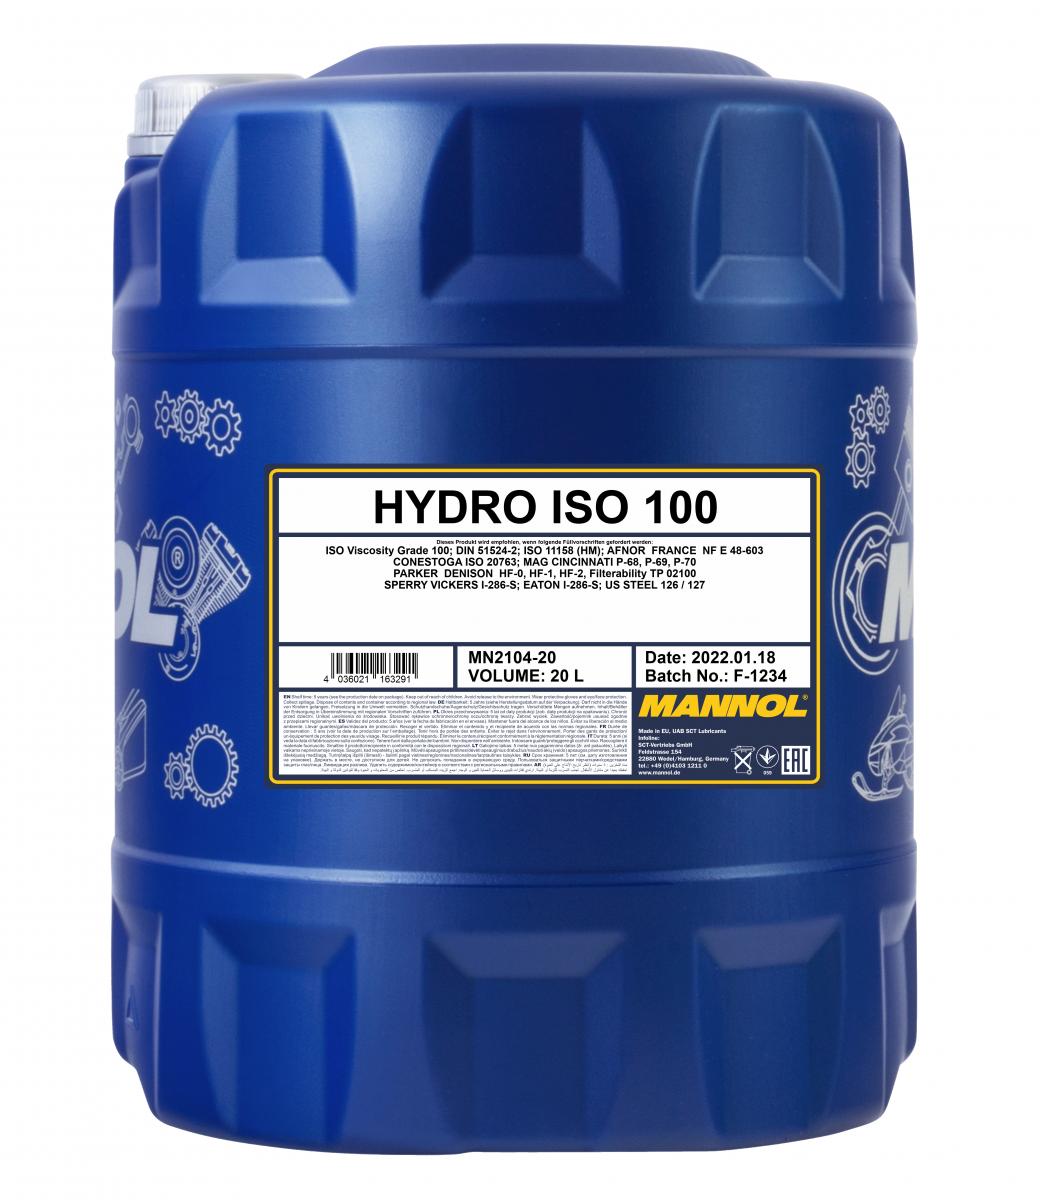 MANNOL Hydro ISO 100 mineralische Hydrauliköl – Levoil